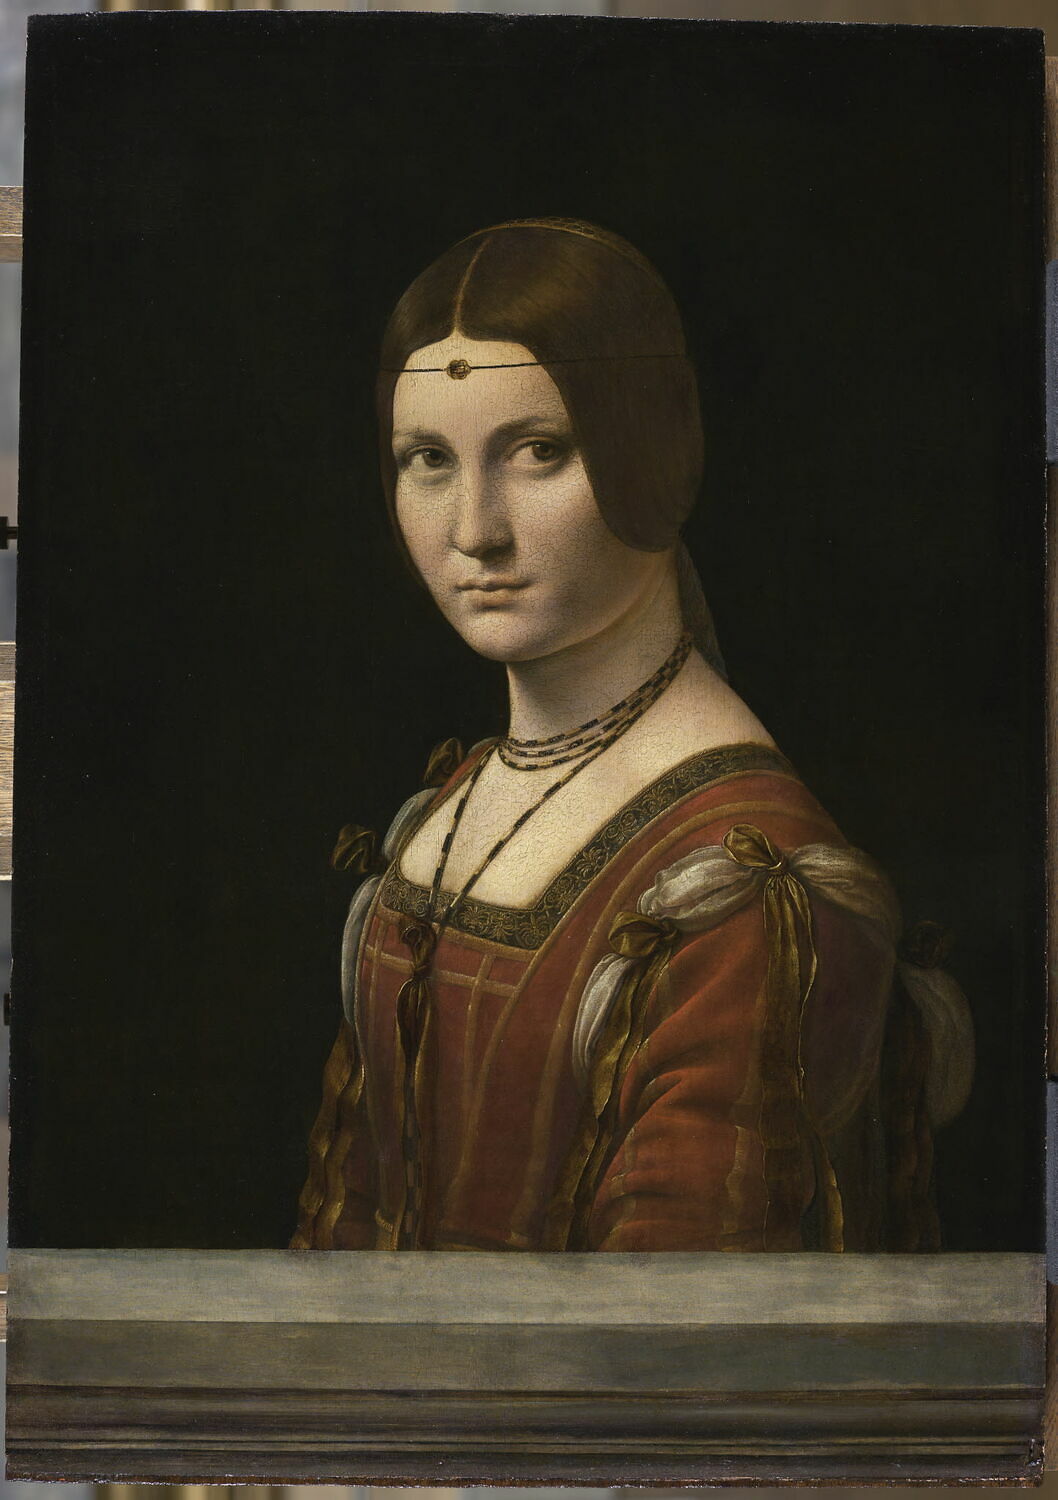 Portrait de femme, also called La Belle Ferronnière